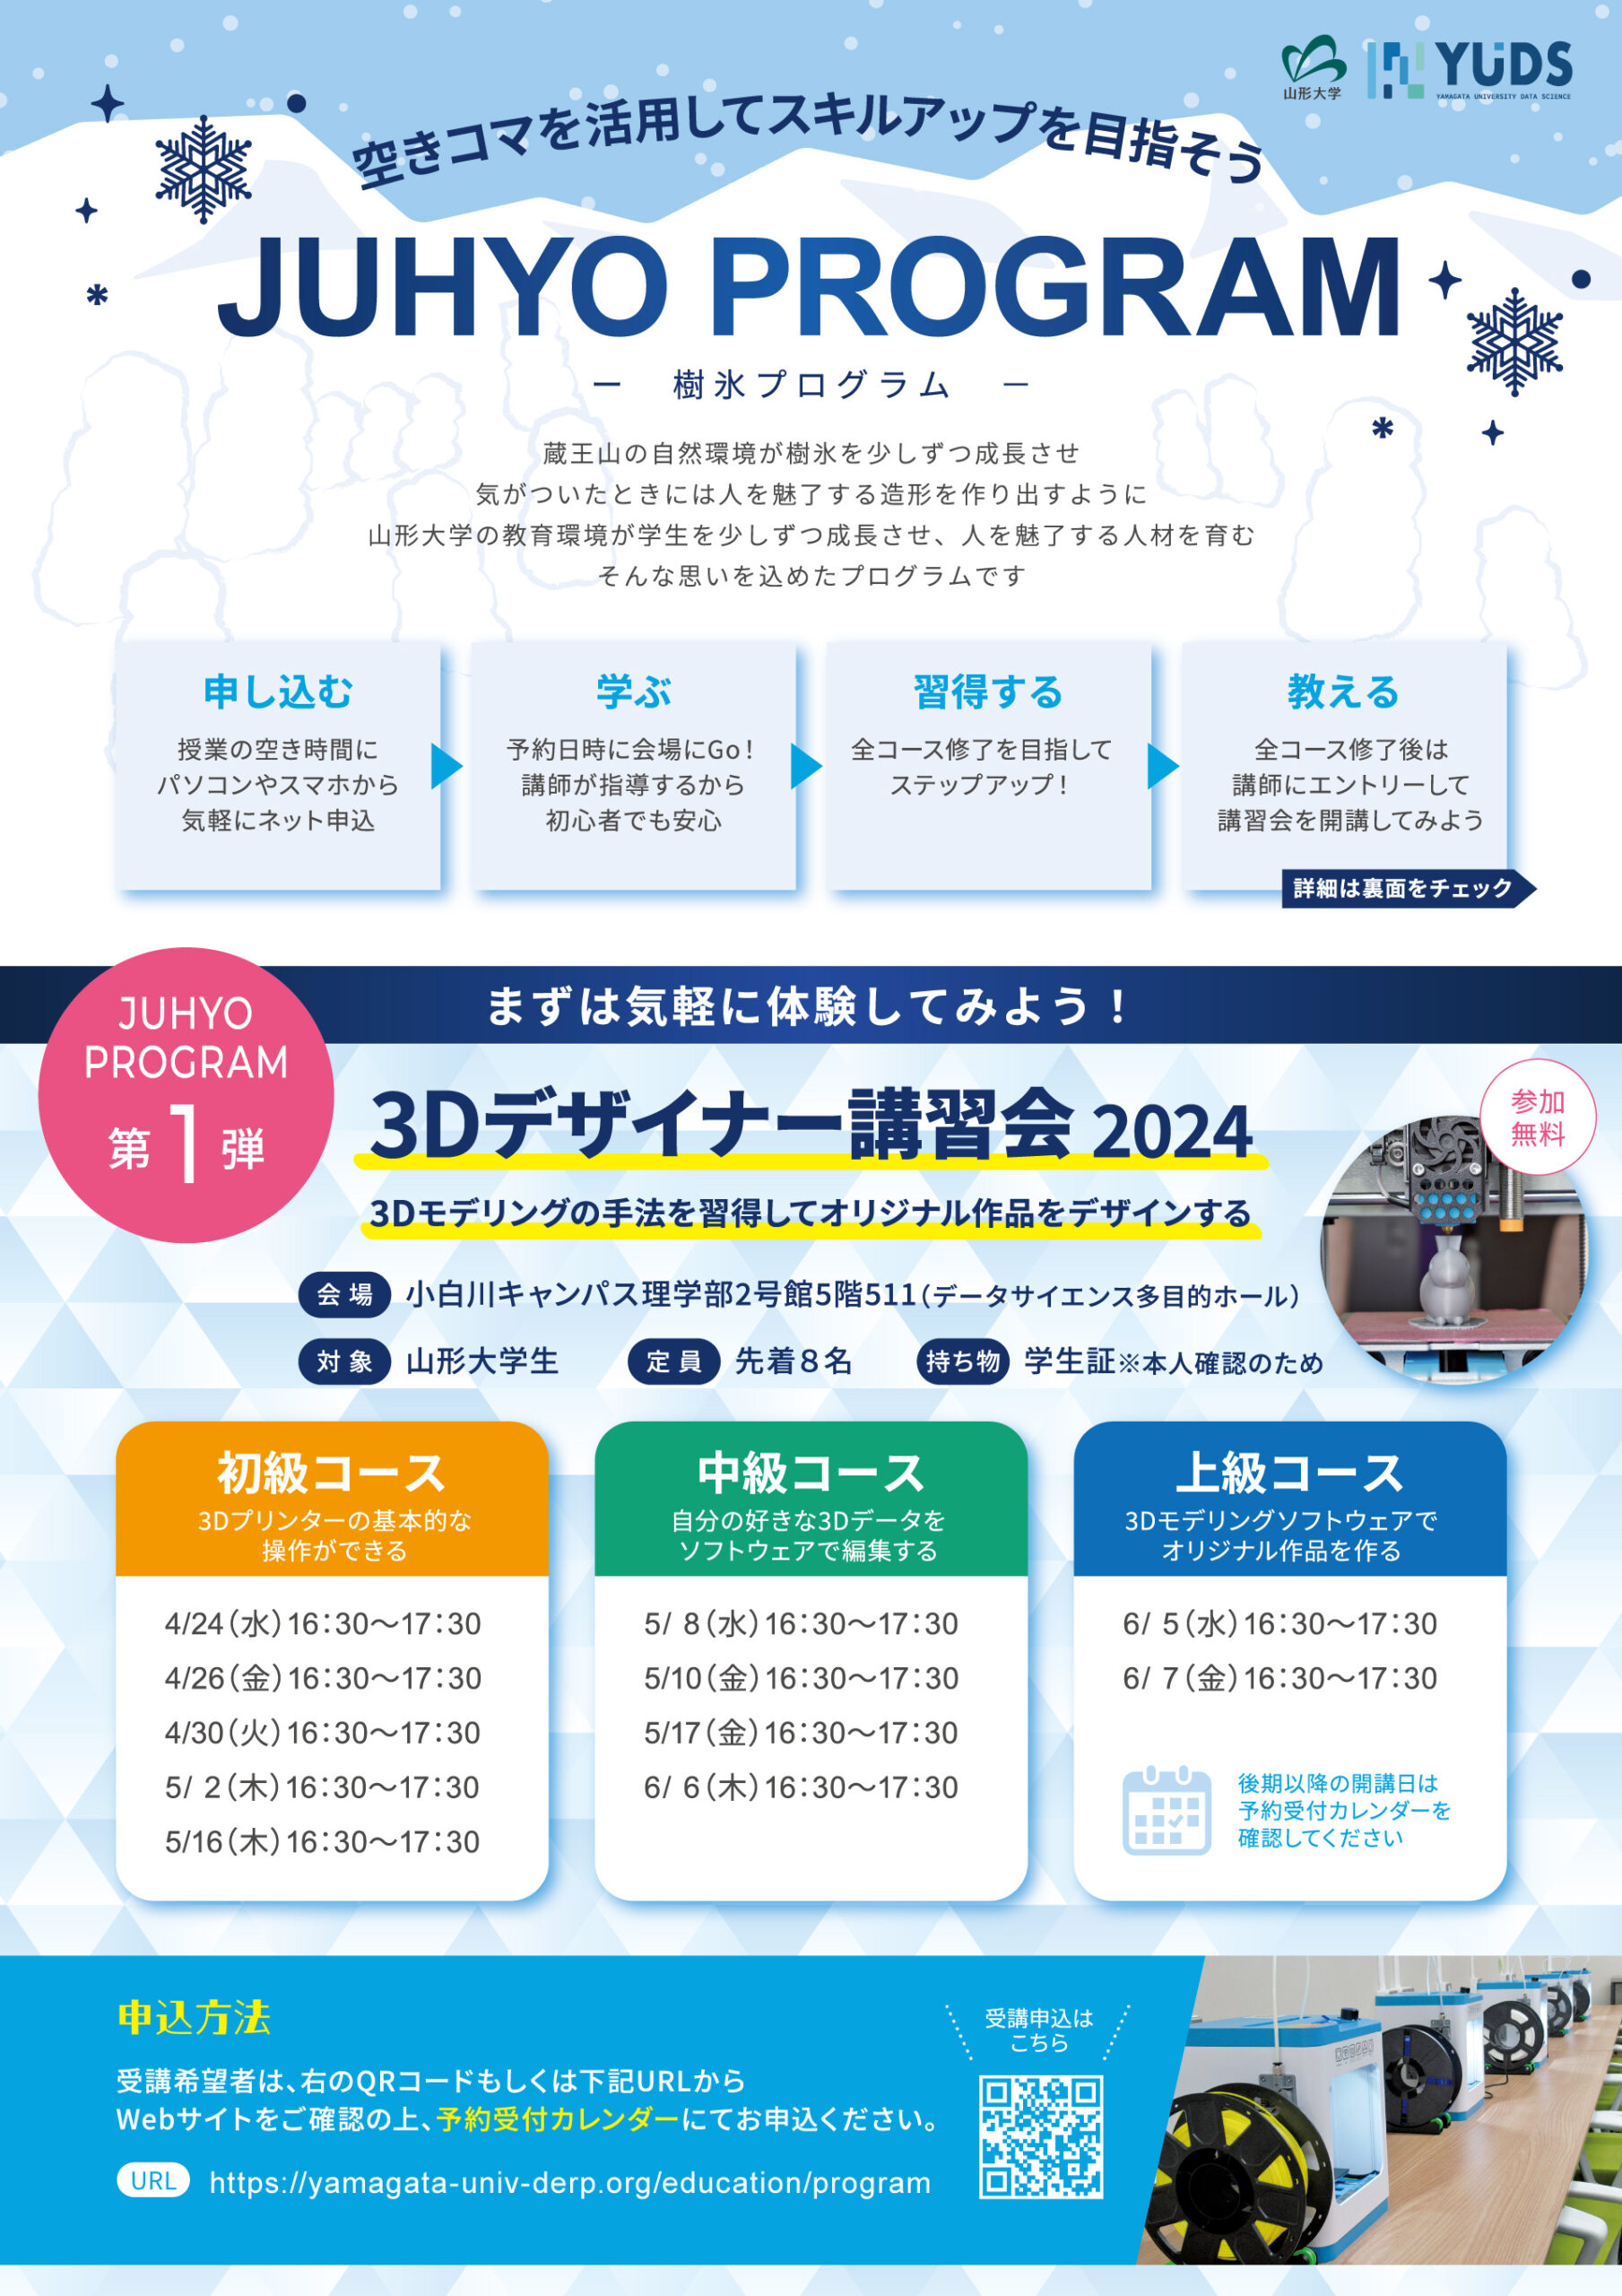 4/24（水） ~ 6/7（金）<br>【山大生向け】JUHYOプログラム「3Dデザイナー講習会2024」開講案内